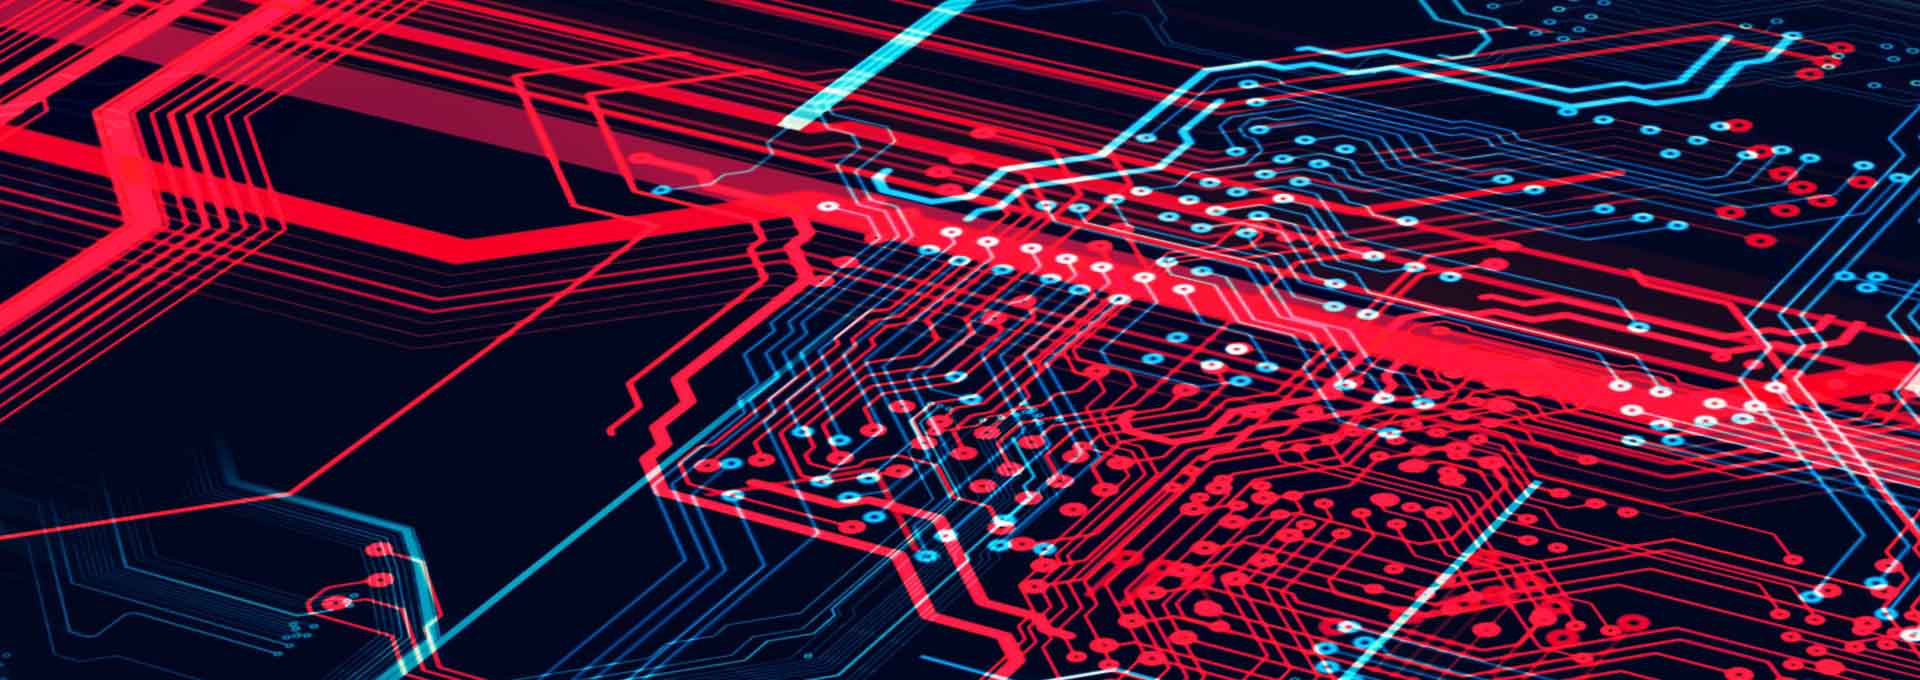 Fondo de tecnología azul oscuro y rojo con placa de circuito, código, línea roja y azul fuerte. Una ilustración en 3D.